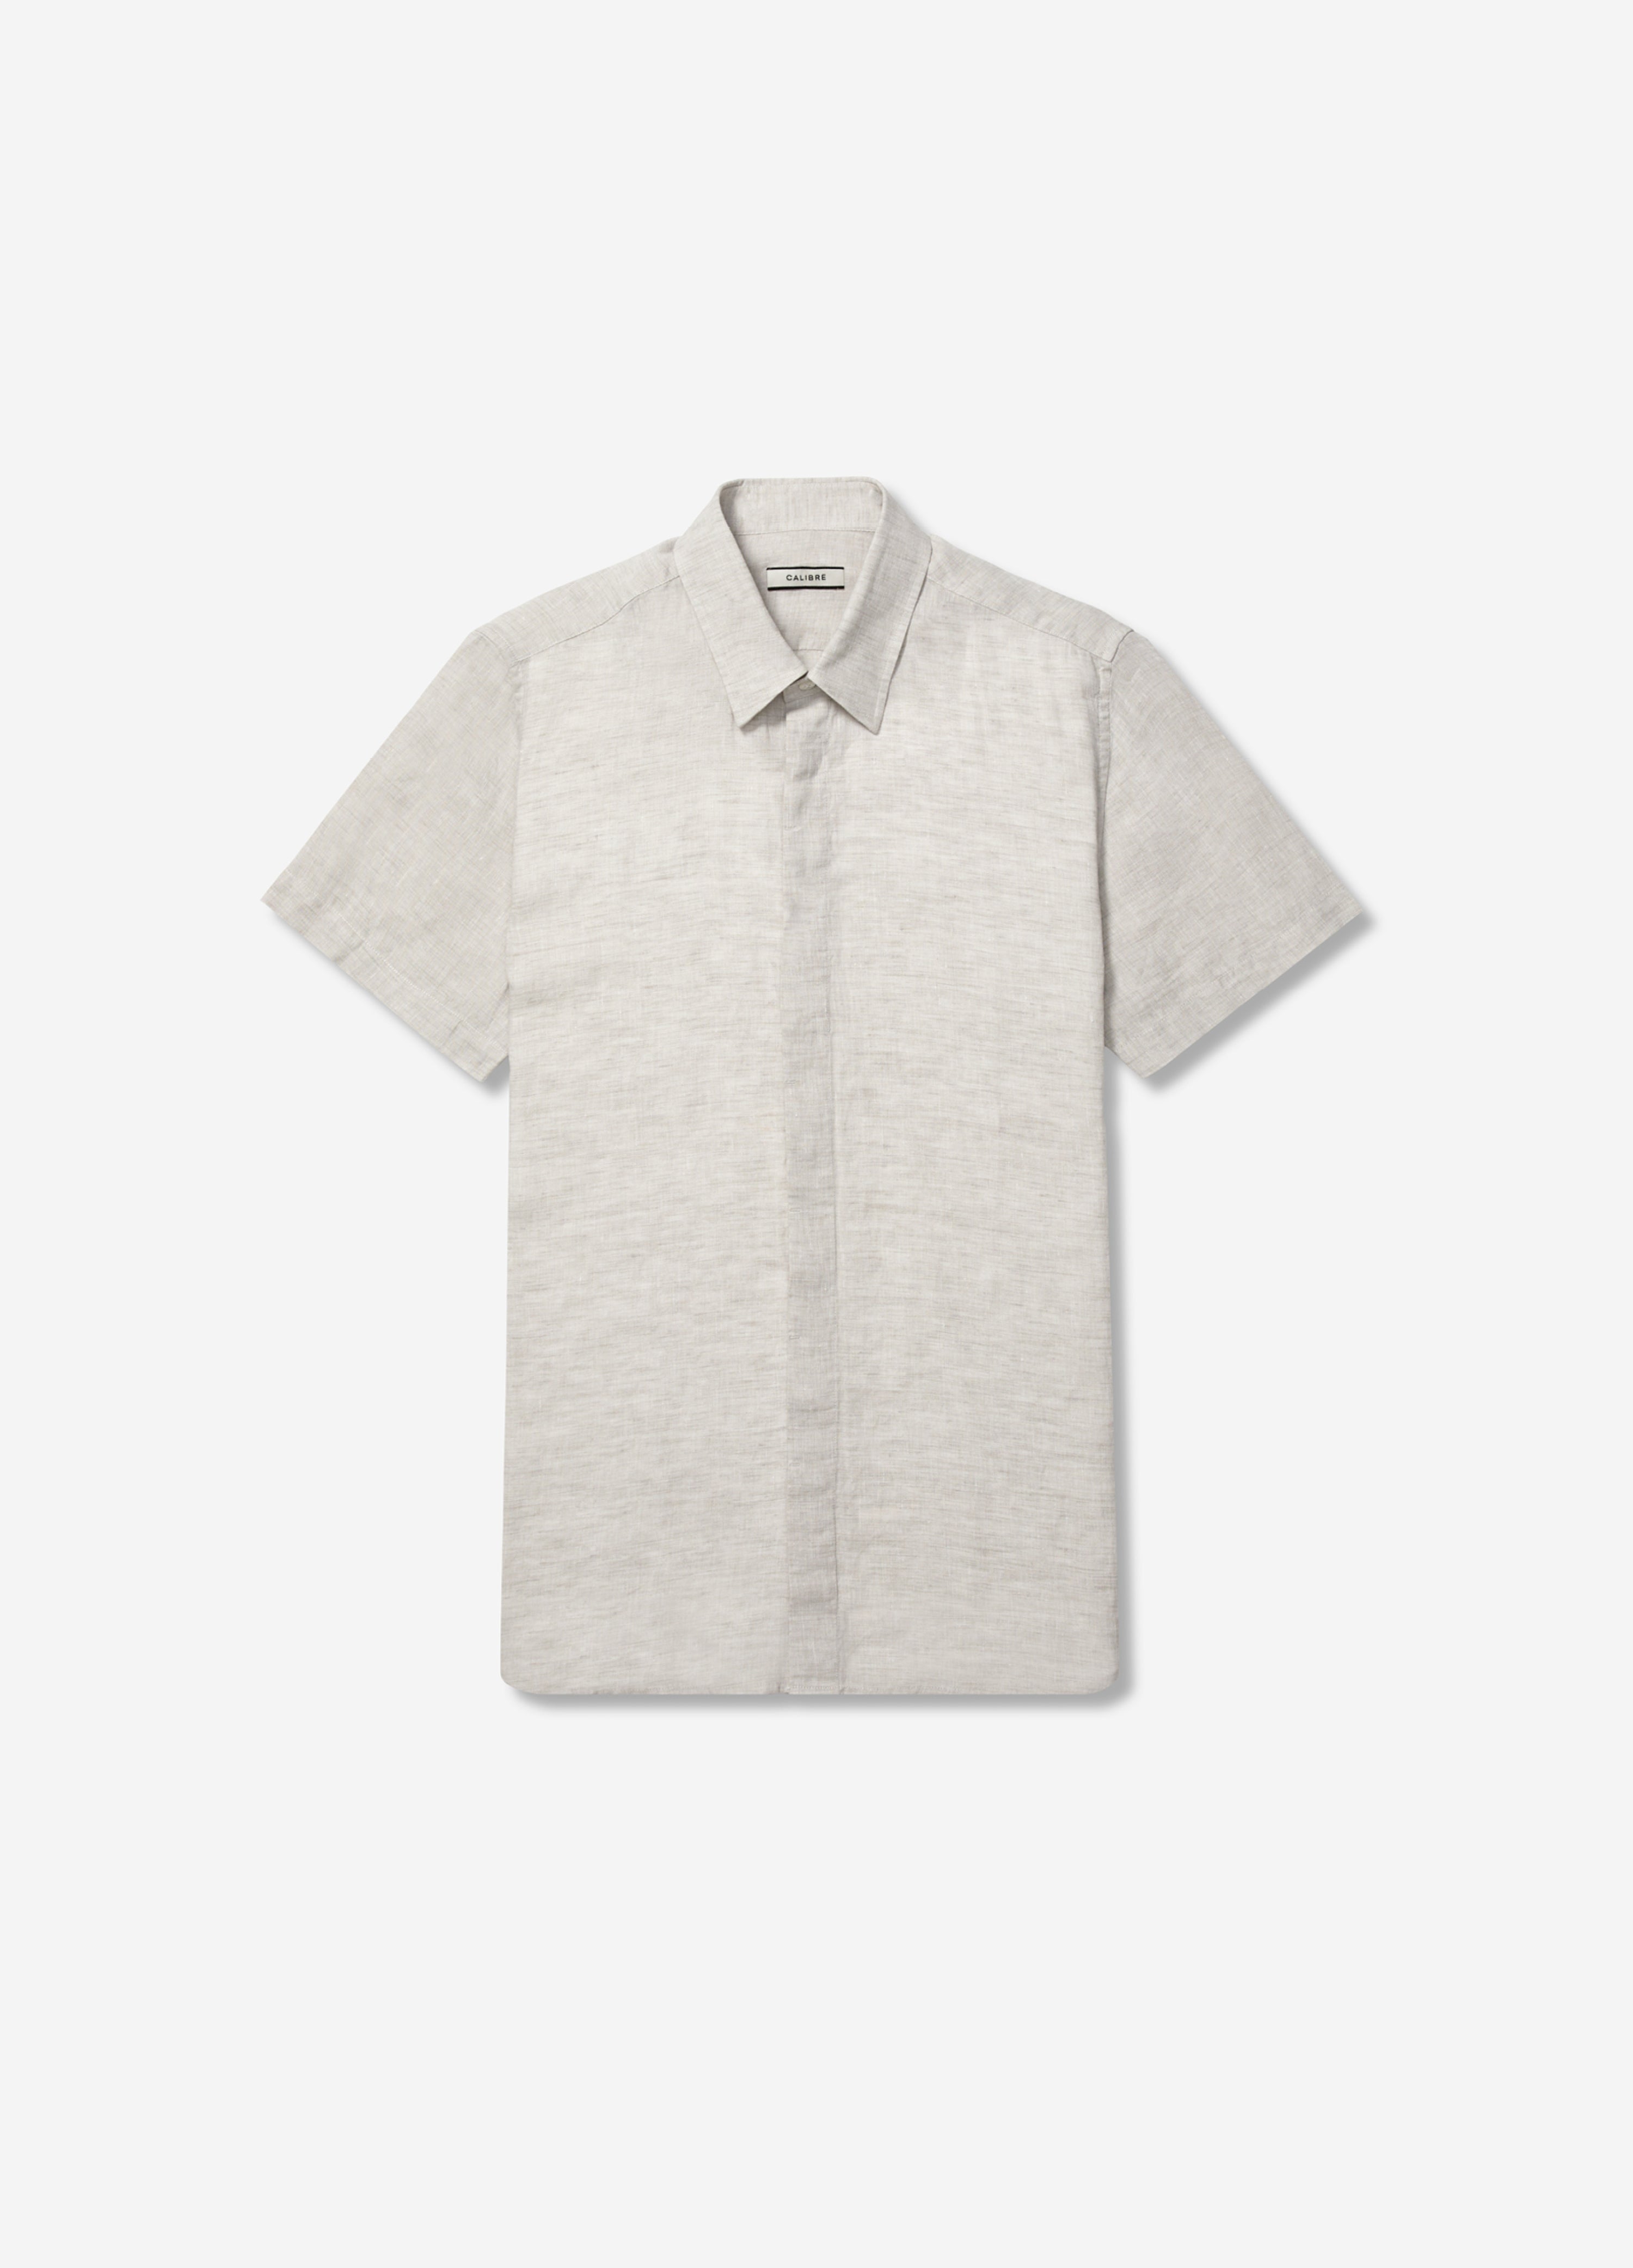 Pure Linen Short Sleeve Shirt - Navy